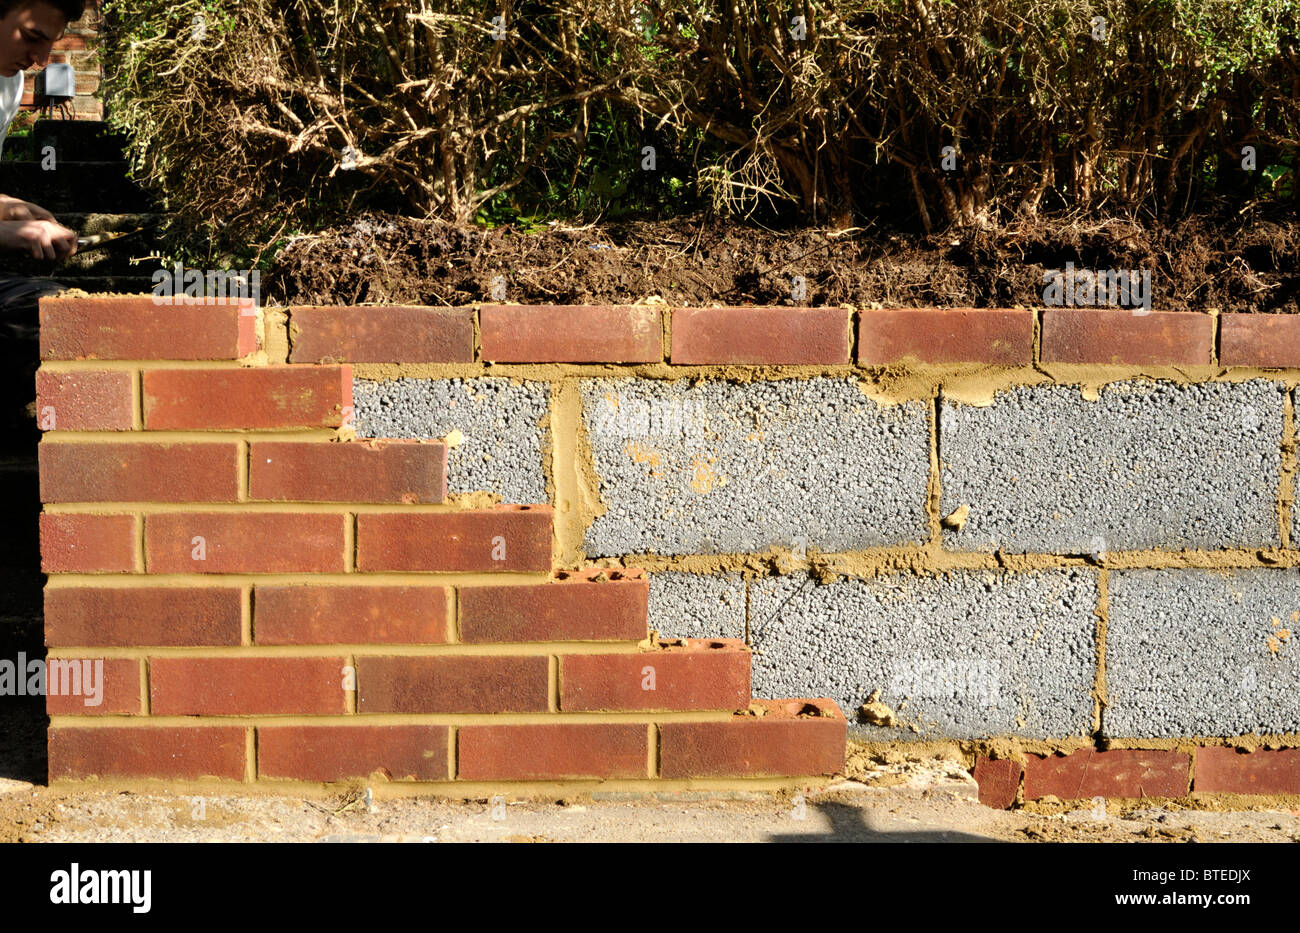 Il nuovo giardino con la parete interna dei blocchi in calcestruzzo ed esterna di mattoni rossi. Regno Unito. Foto Stock